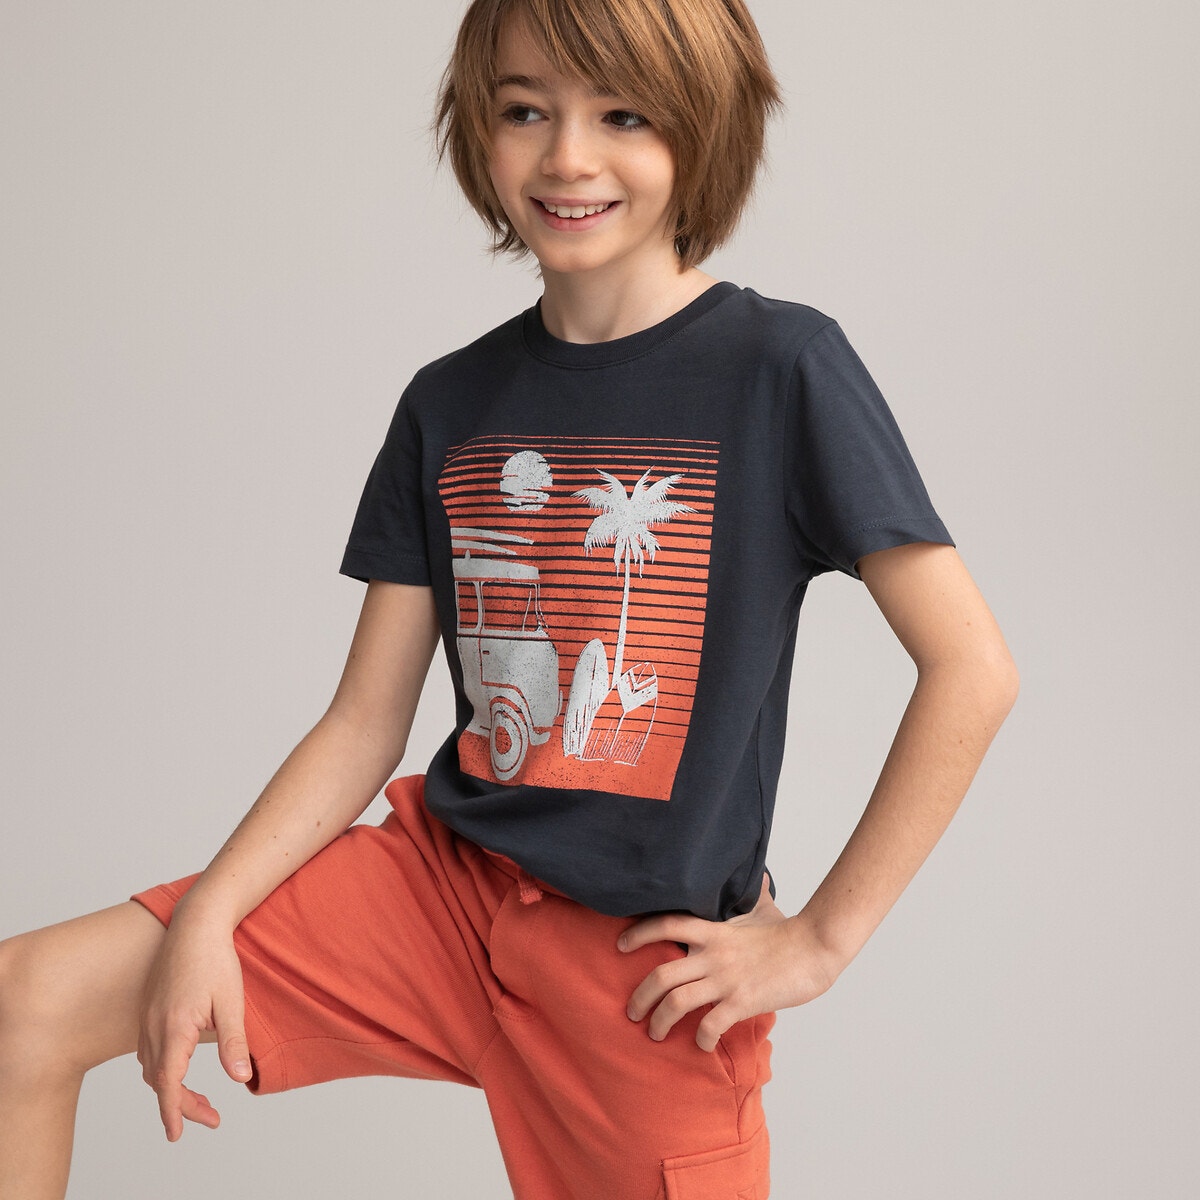 Μόδα > Παιδικά > Αγόρι > T-shirt, πόλο > Κοντά μανίκια Κοντομάνικο T-shirt με στάμπα μπροστά